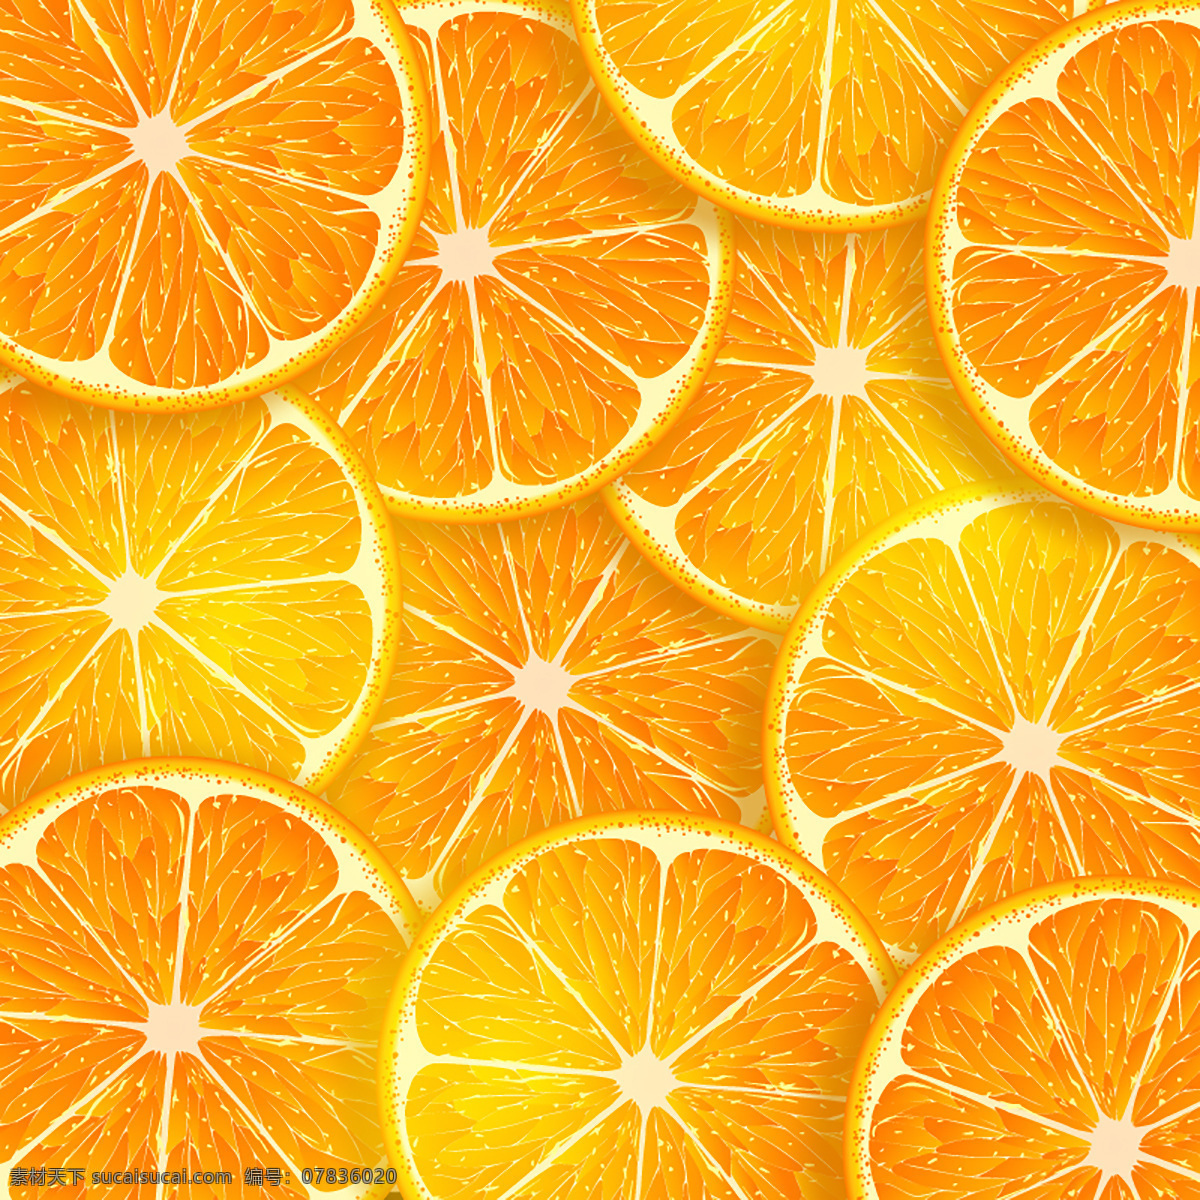 高清橙子切片 橙子 切面 一片橙子 营养 健康 水果 橙色 活力 背景 品质感 大气 高端 节气 地产 广告 底纹边框 背景底纹